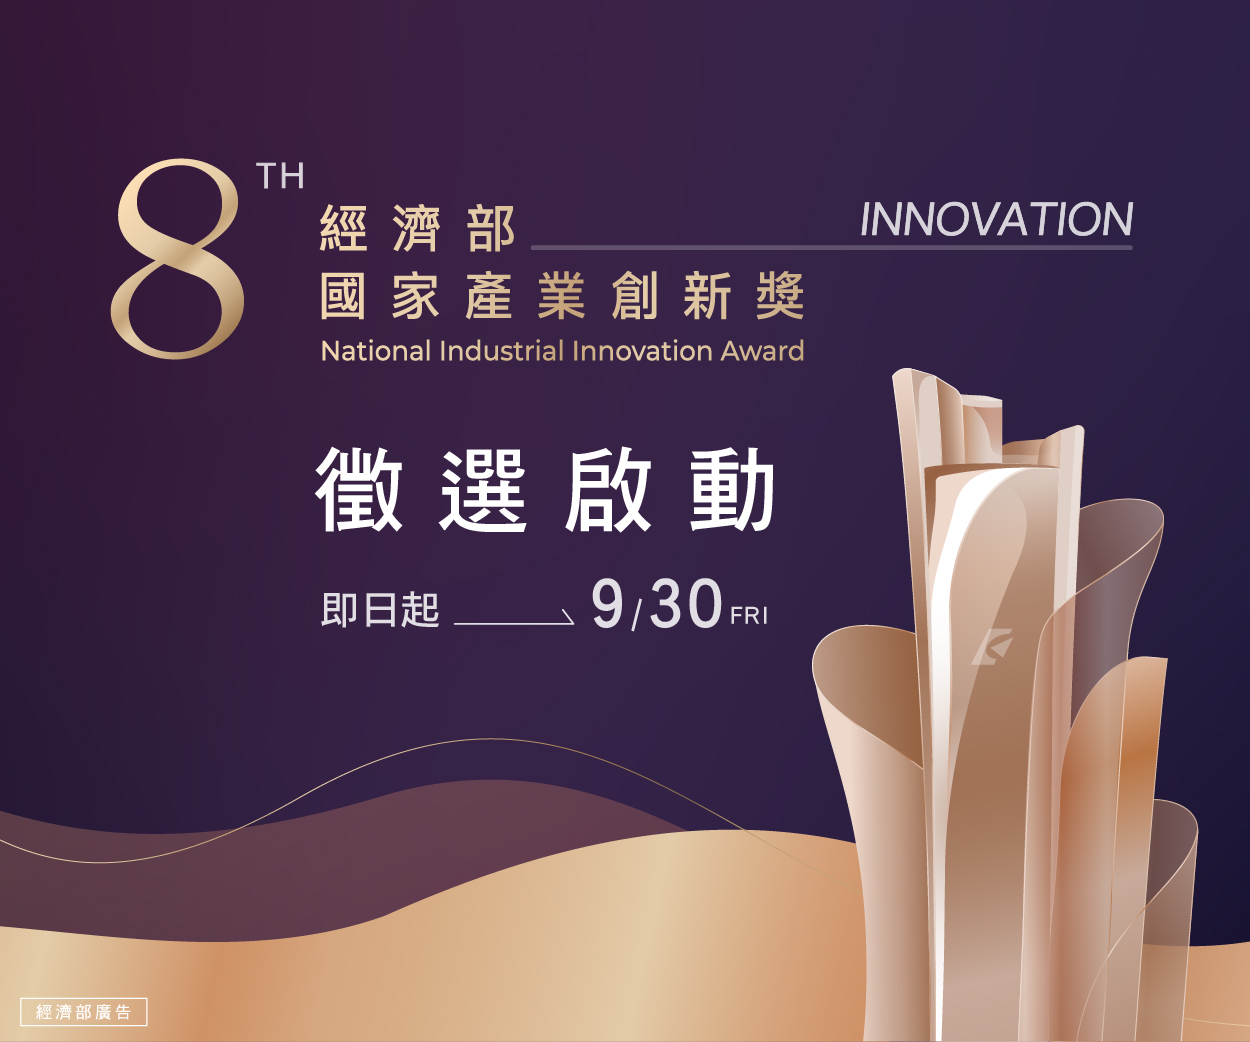 第八屆「經濟部國家產業創新獎」徵選正式啟動